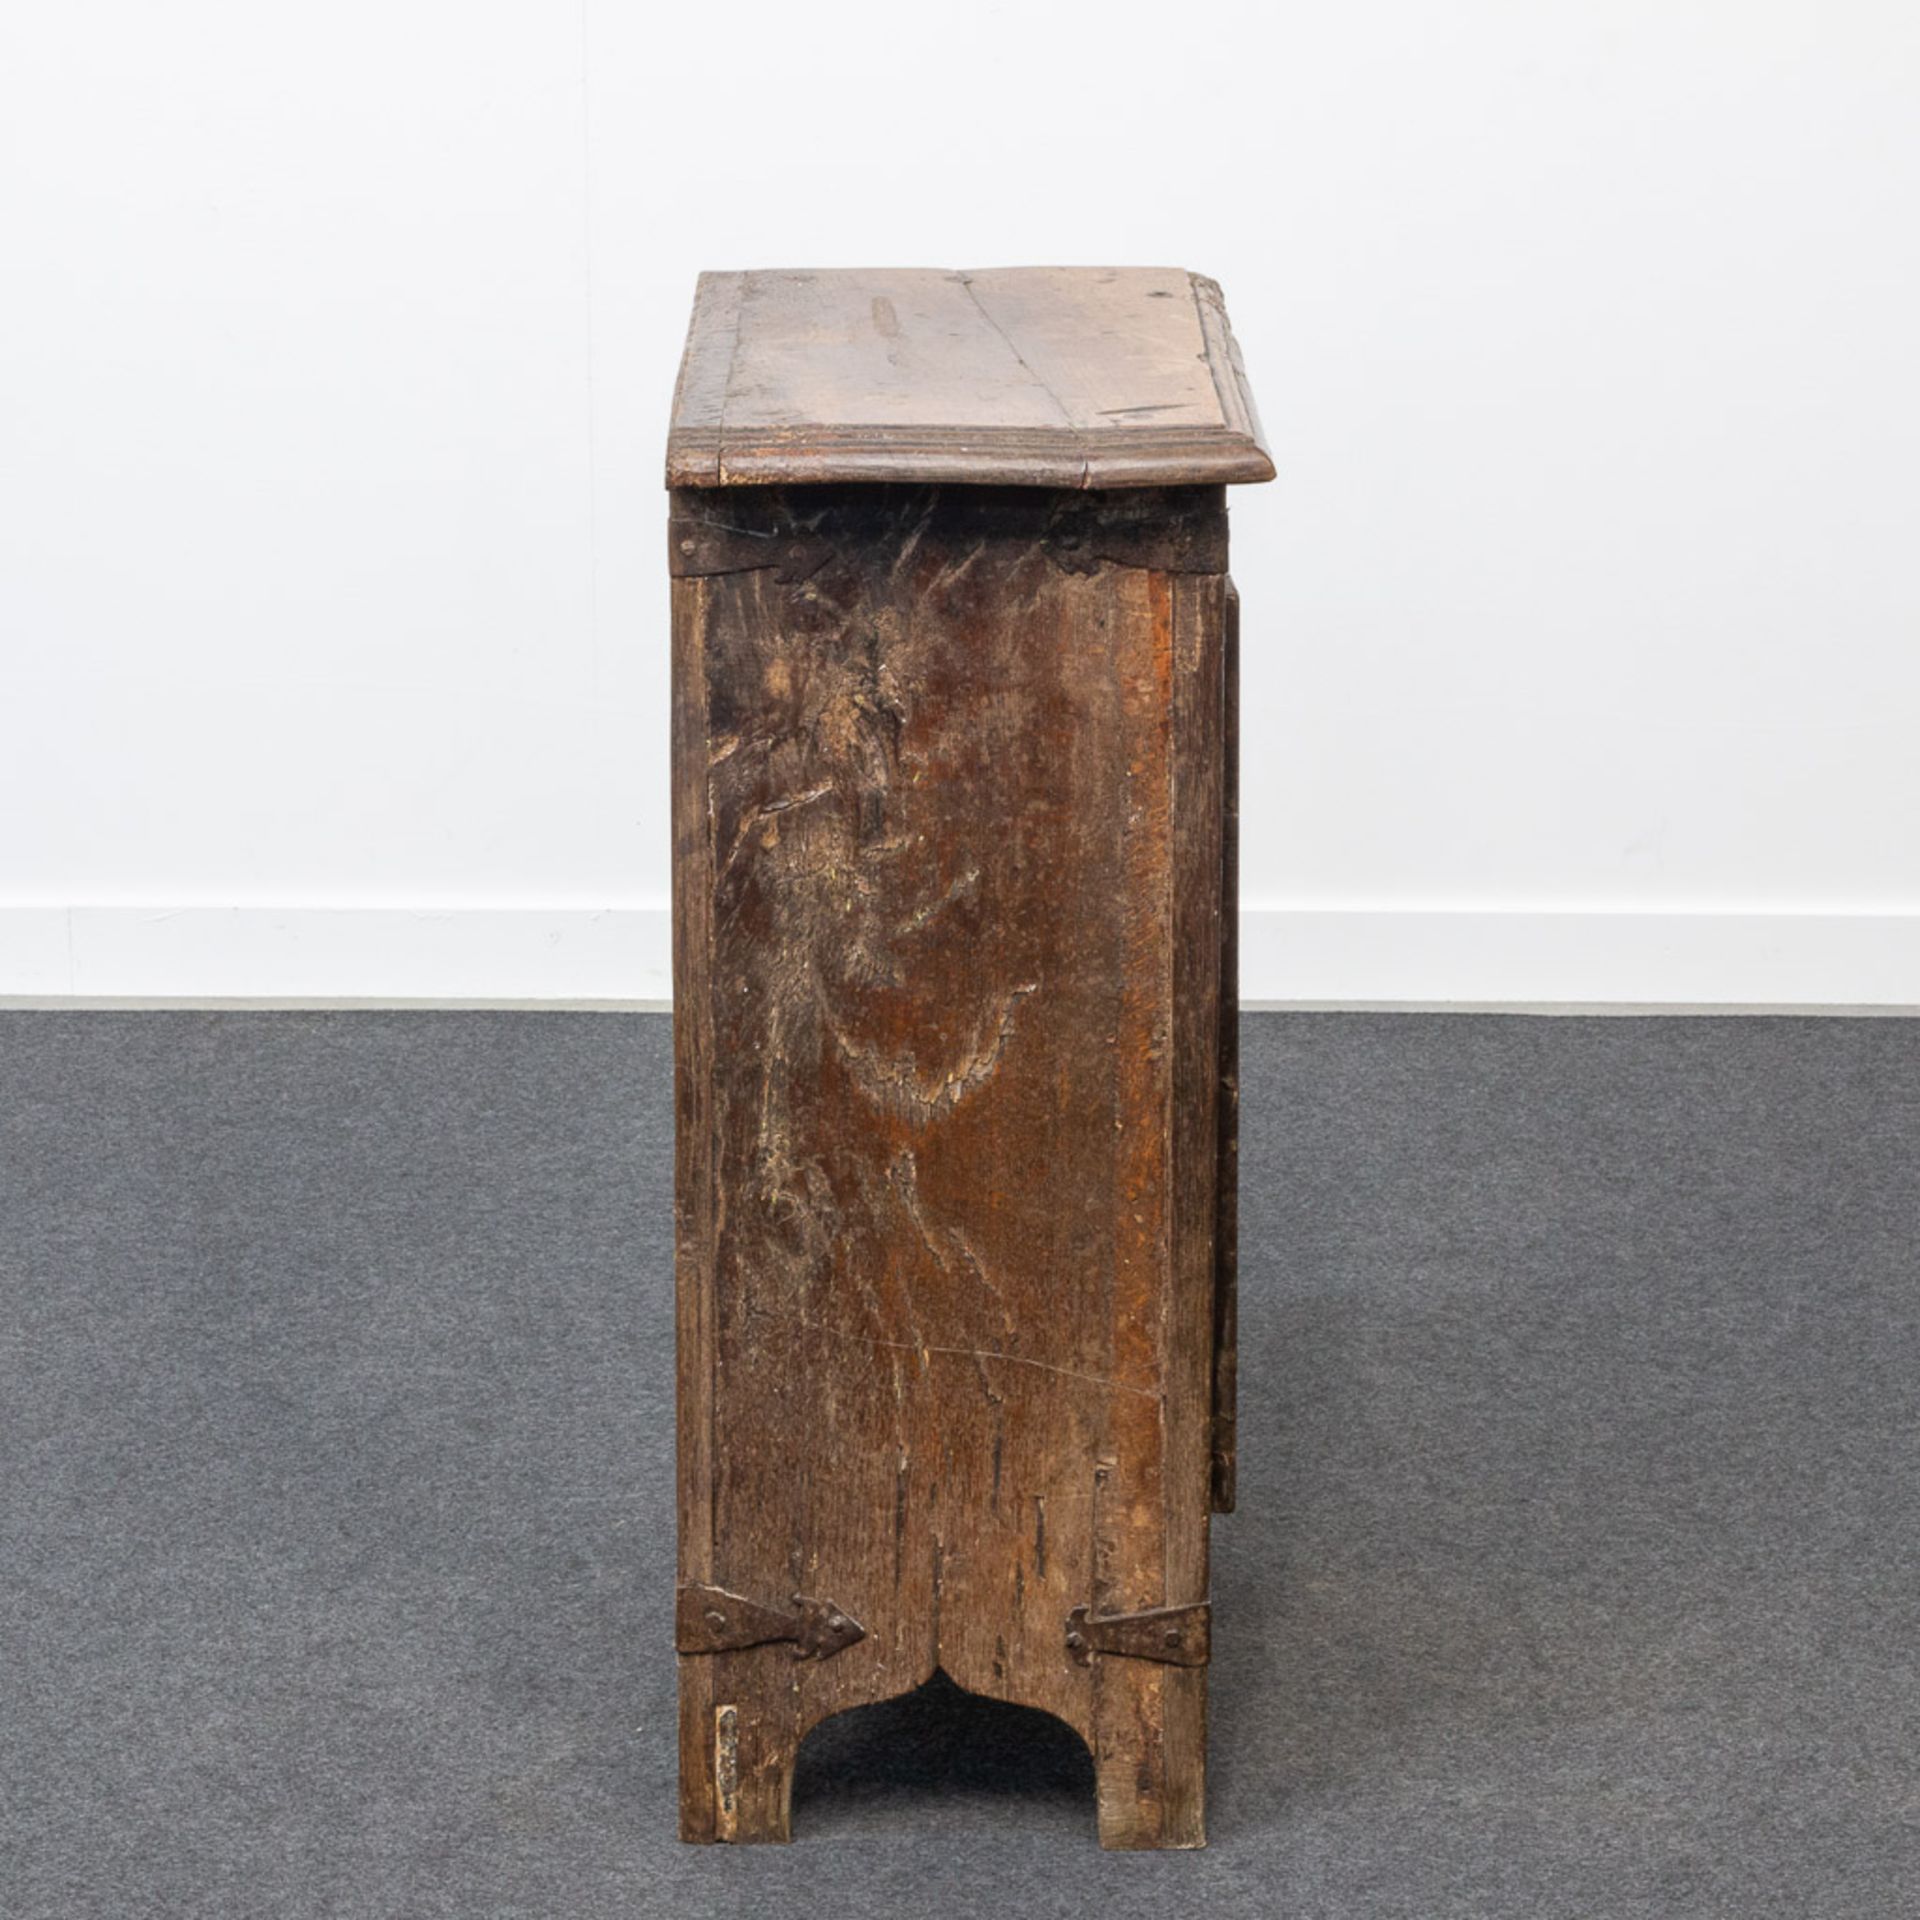 A One door cabinet, oak. - Image 2 of 25